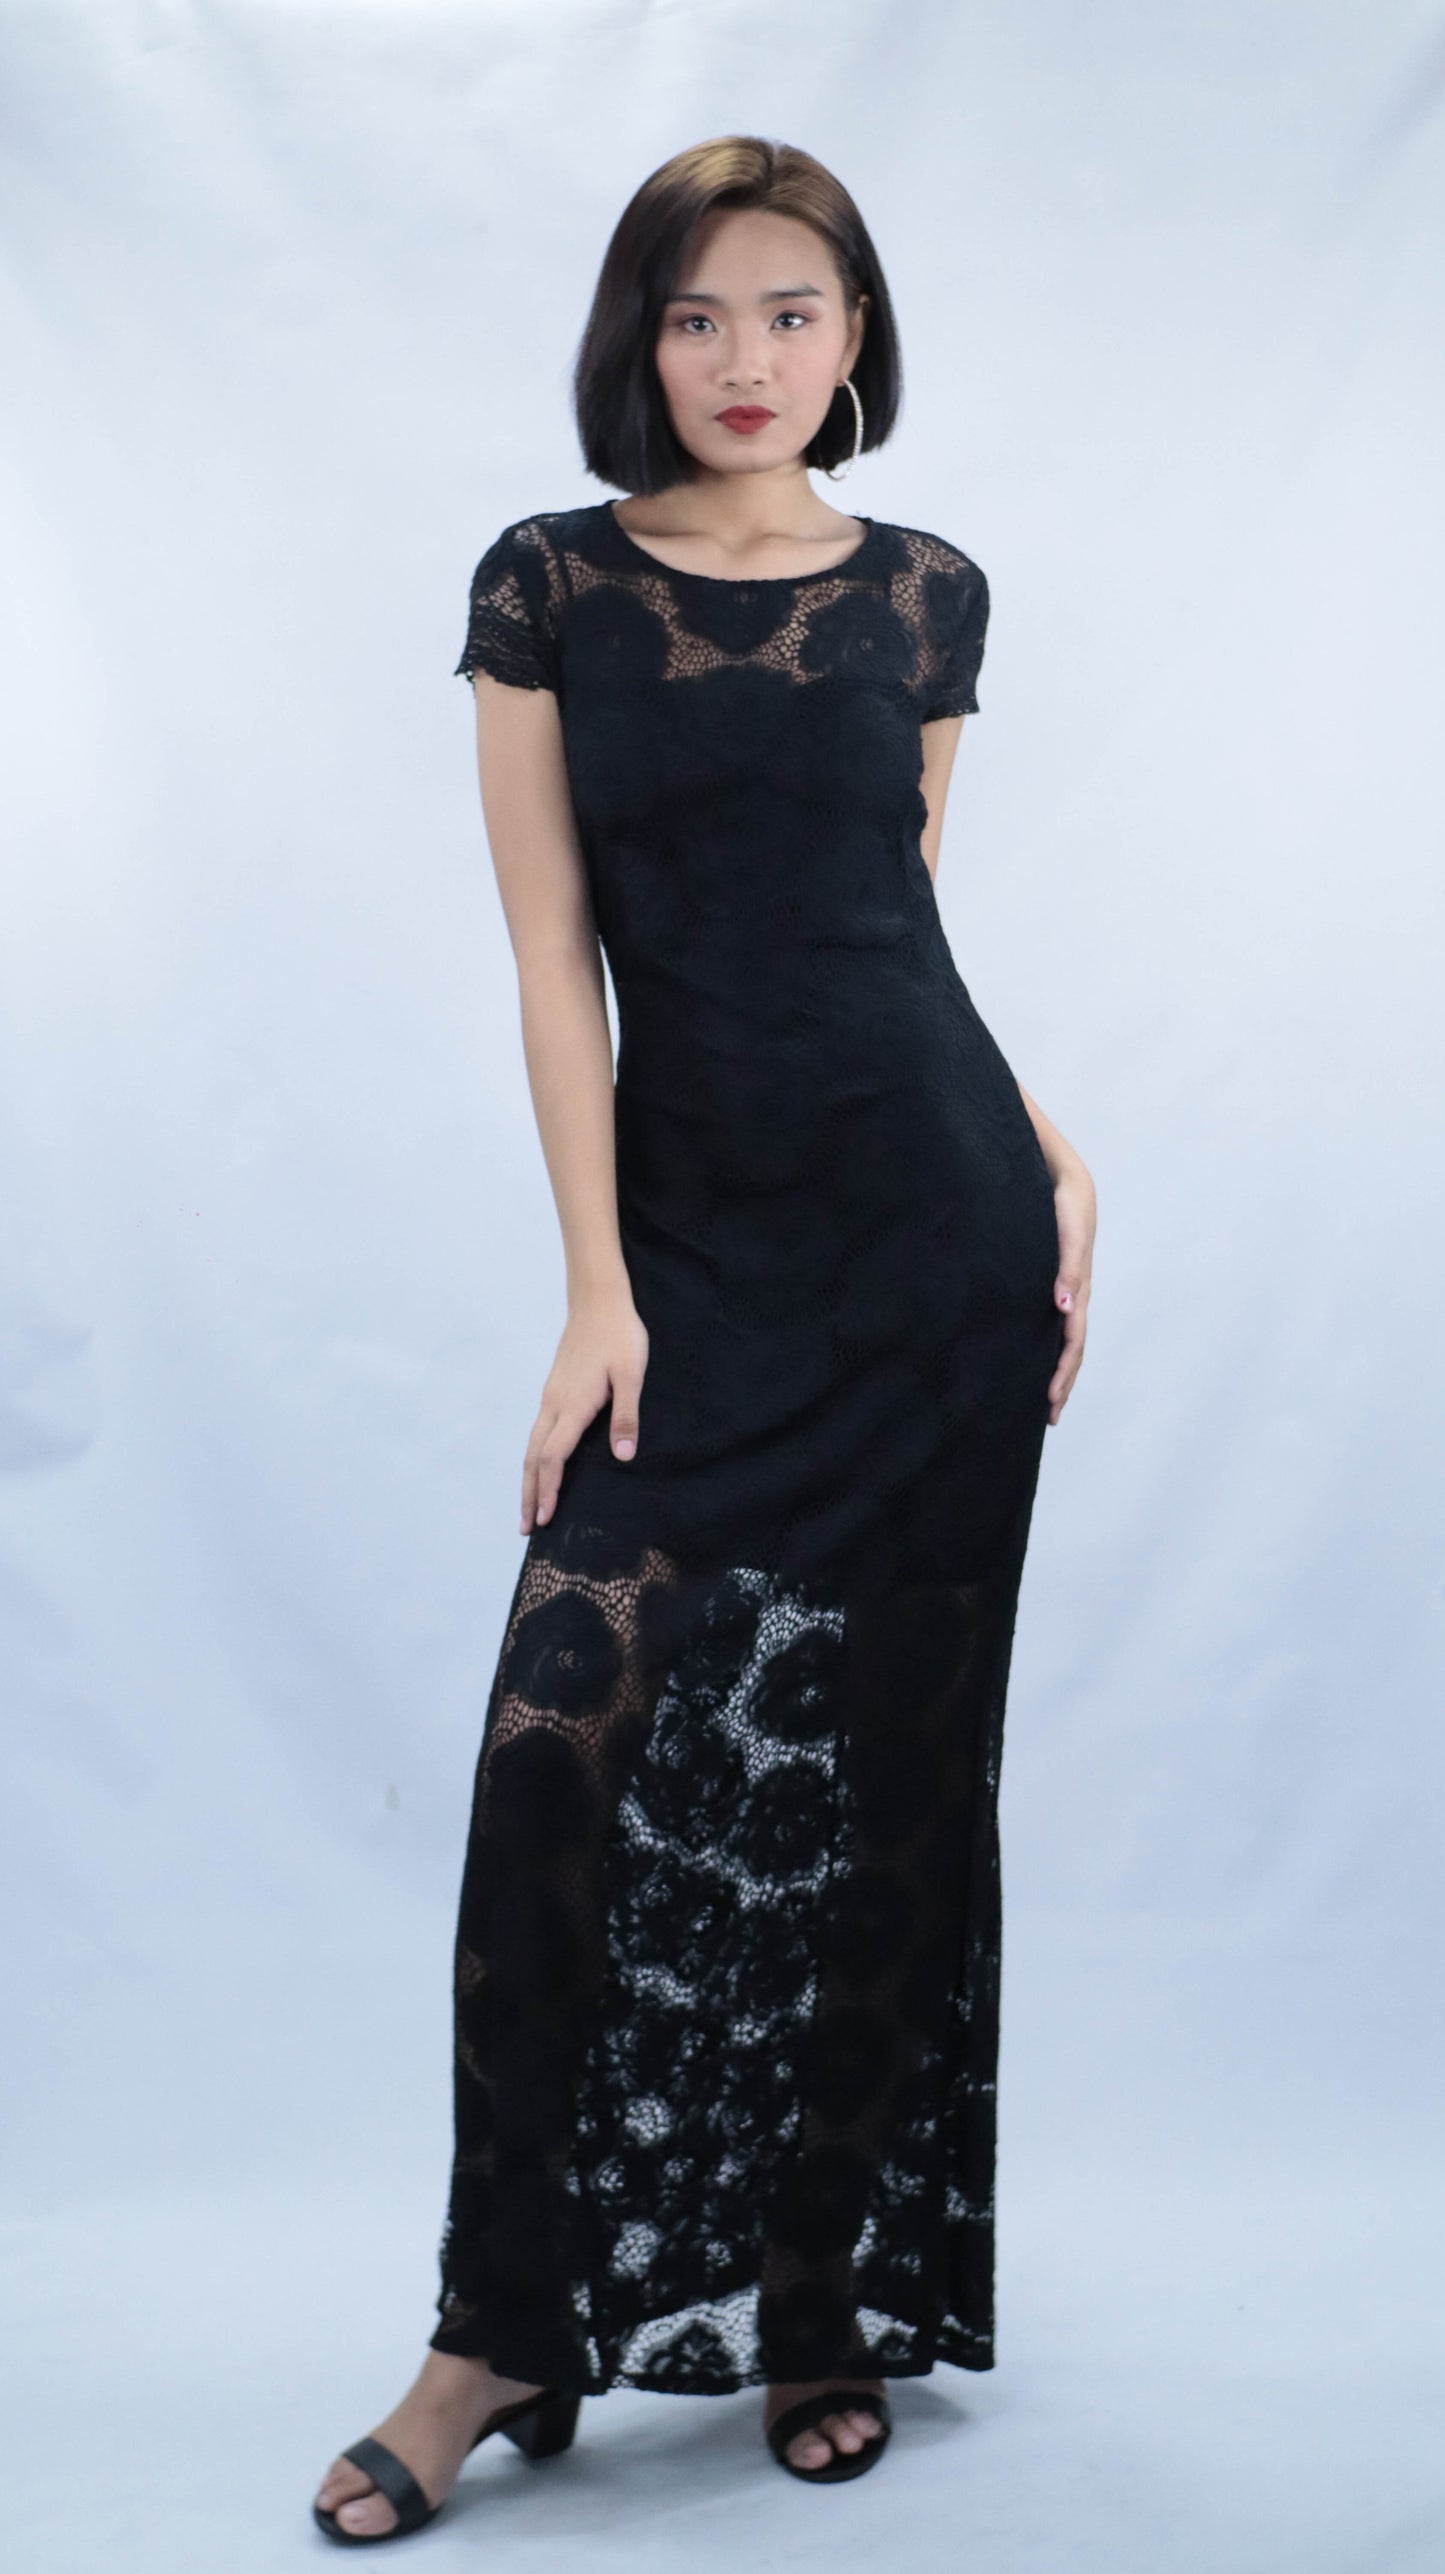 Black Lace Cocktail Dress